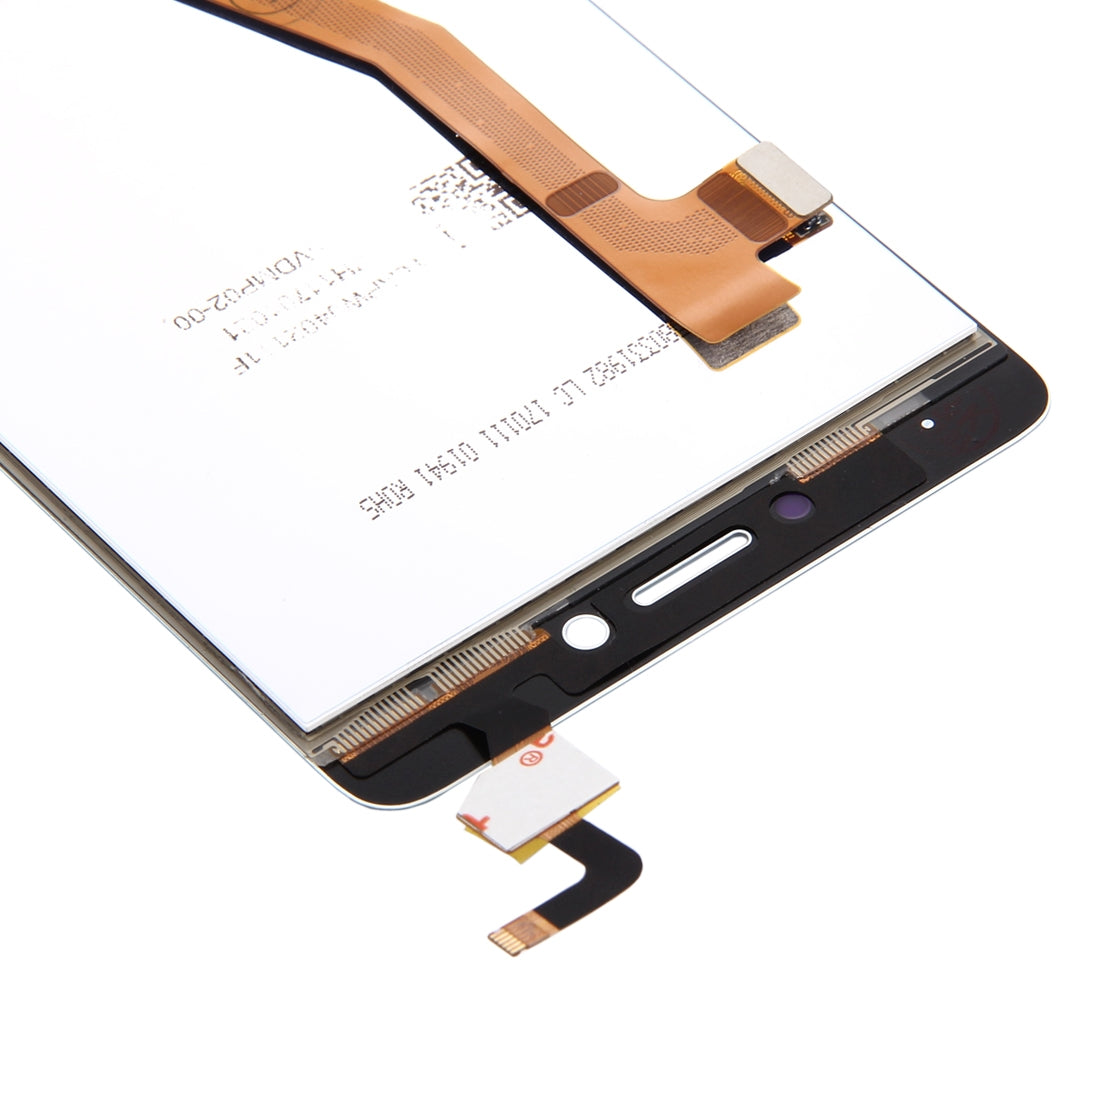 Ecran LCD + Numériseur Tactile Lenovo K6 Note Numériseur Blanc